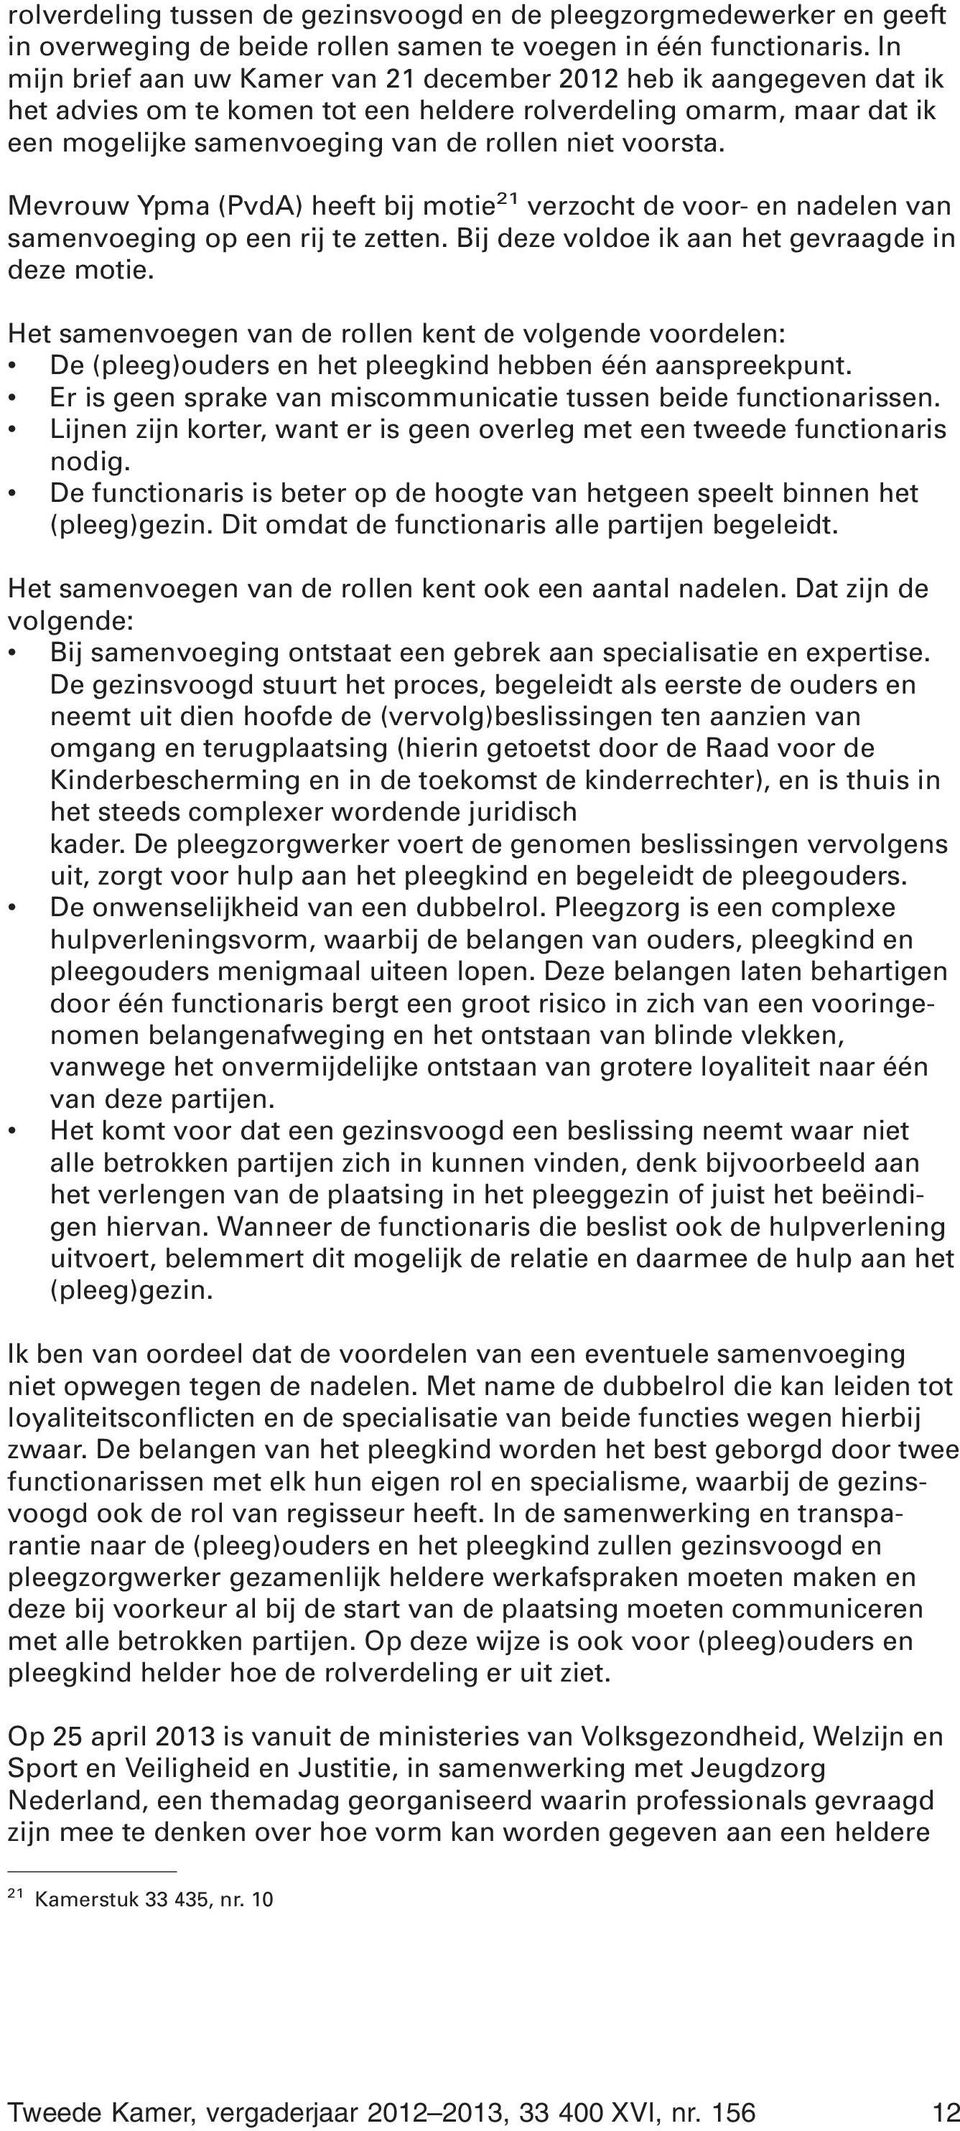 Mevrouw Ypma (PvdA) heeft bij motie 21 verzocht de voor- en nadelen van samenvoeging op een rij te zetten. Bij deze voldoe ik aan het gevraagde in deze motie.